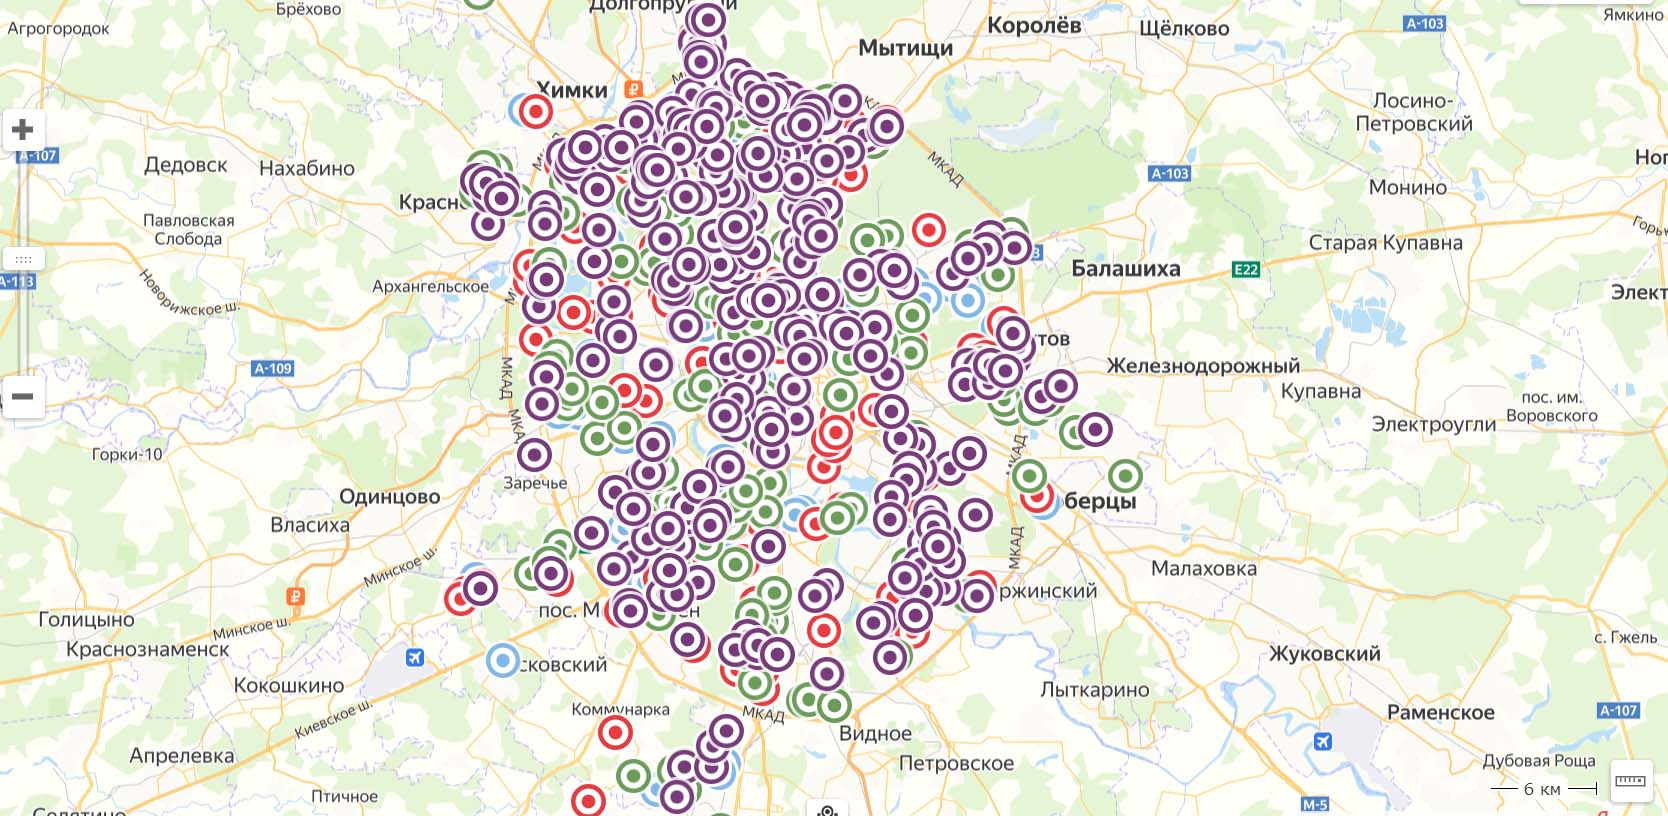 Карта распространения коронавируса в Москве